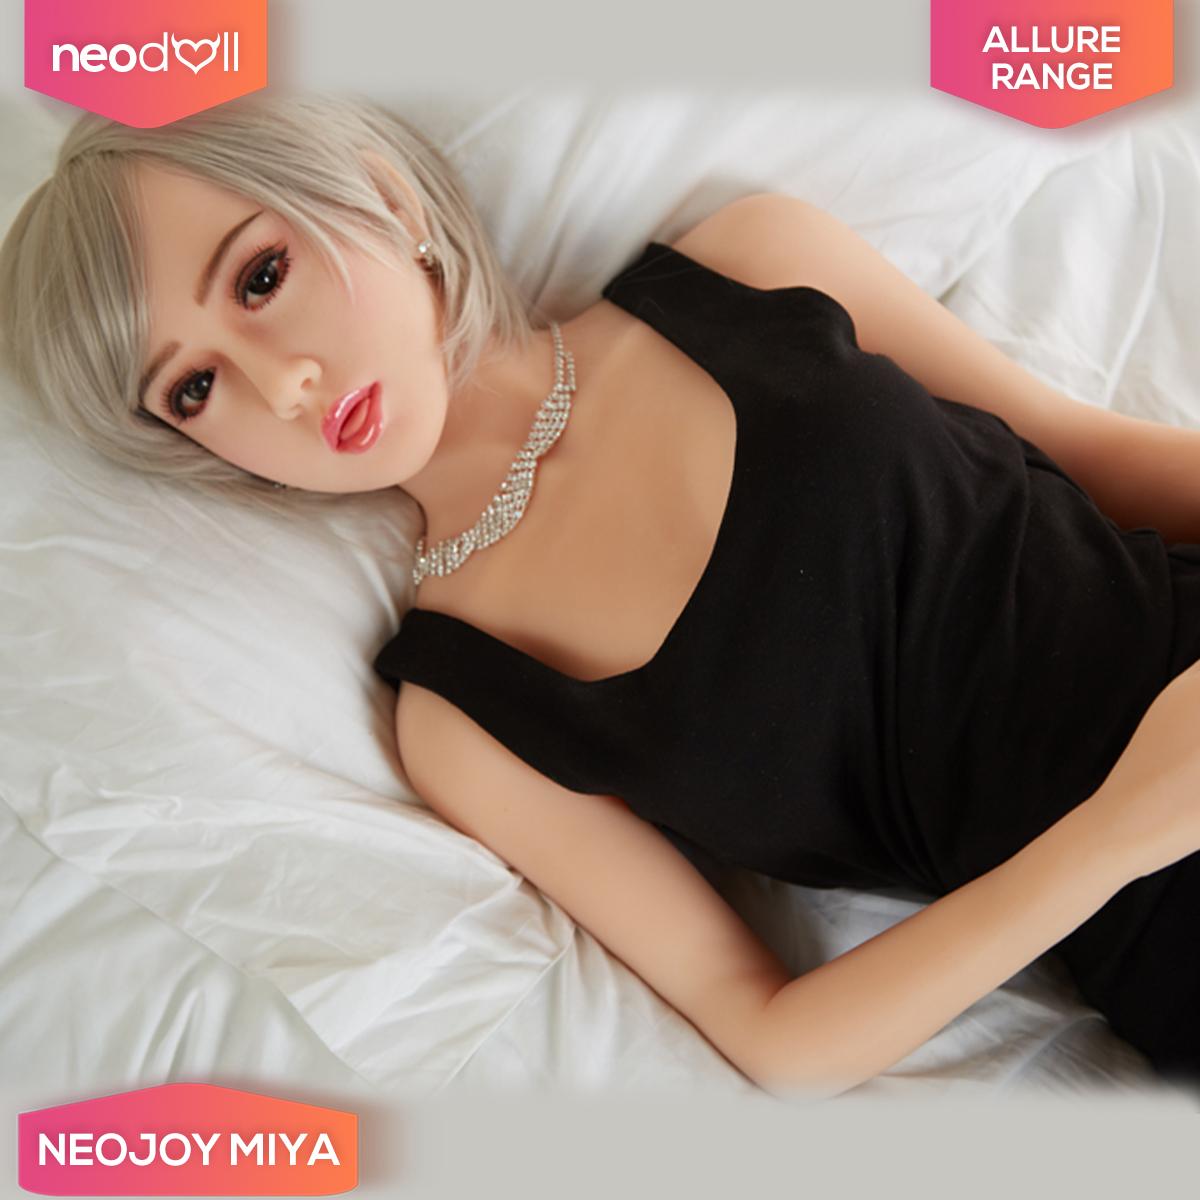 Neodoll Allure Miya Liebespuppe Realistische Sexpuppe 170cm Ebay 